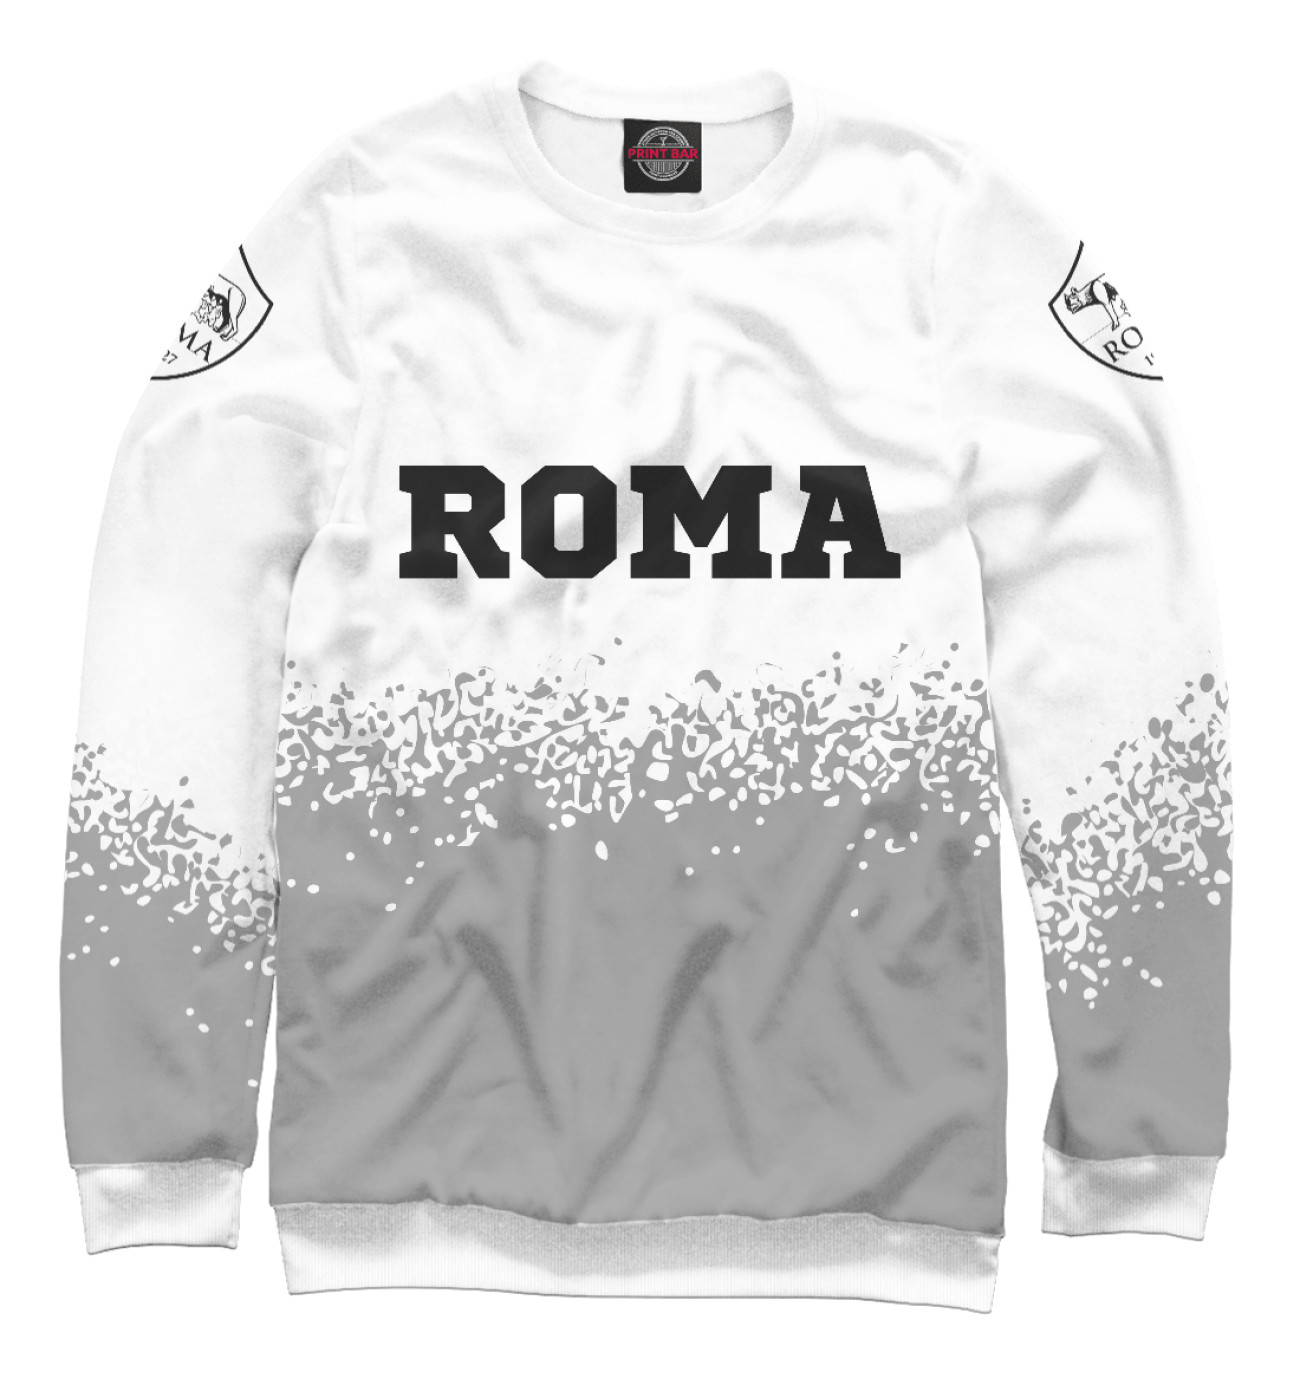 Мужской Свитшот Roma Sport Light, артикул: RMA-418594-swi-2